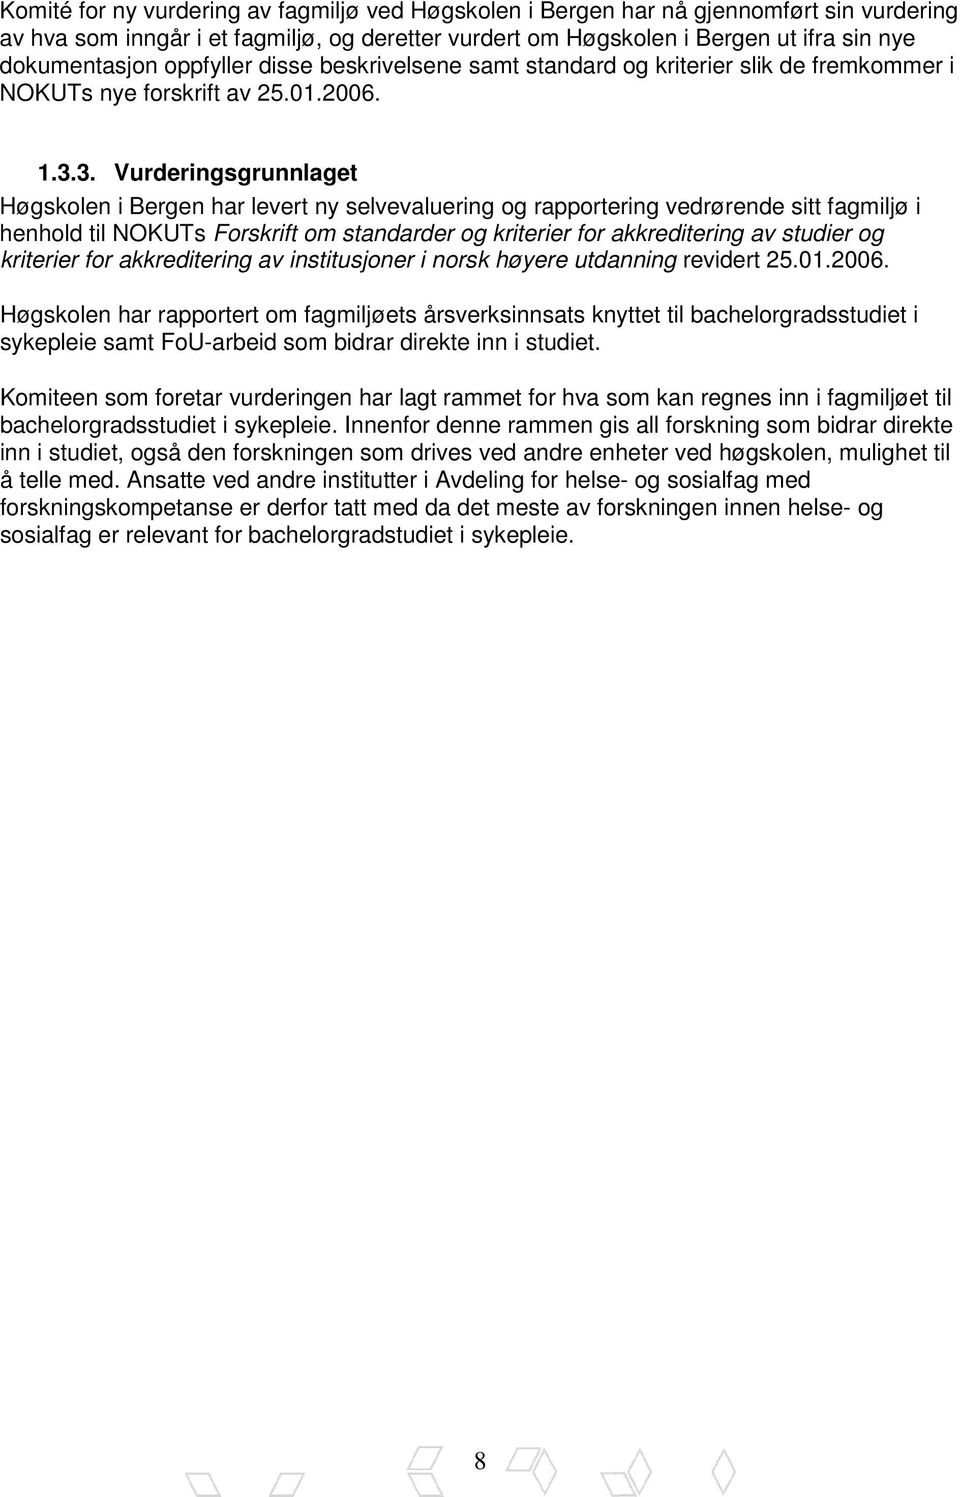 3. Vurderingsgrunnlaget Høgskolen i Bergen har levert ny selvevaluering og rapportering vedrørende sitt fagmiljø i henhold til NOKUTs Forskrift om standarder og kriterier for akkreditering av studier